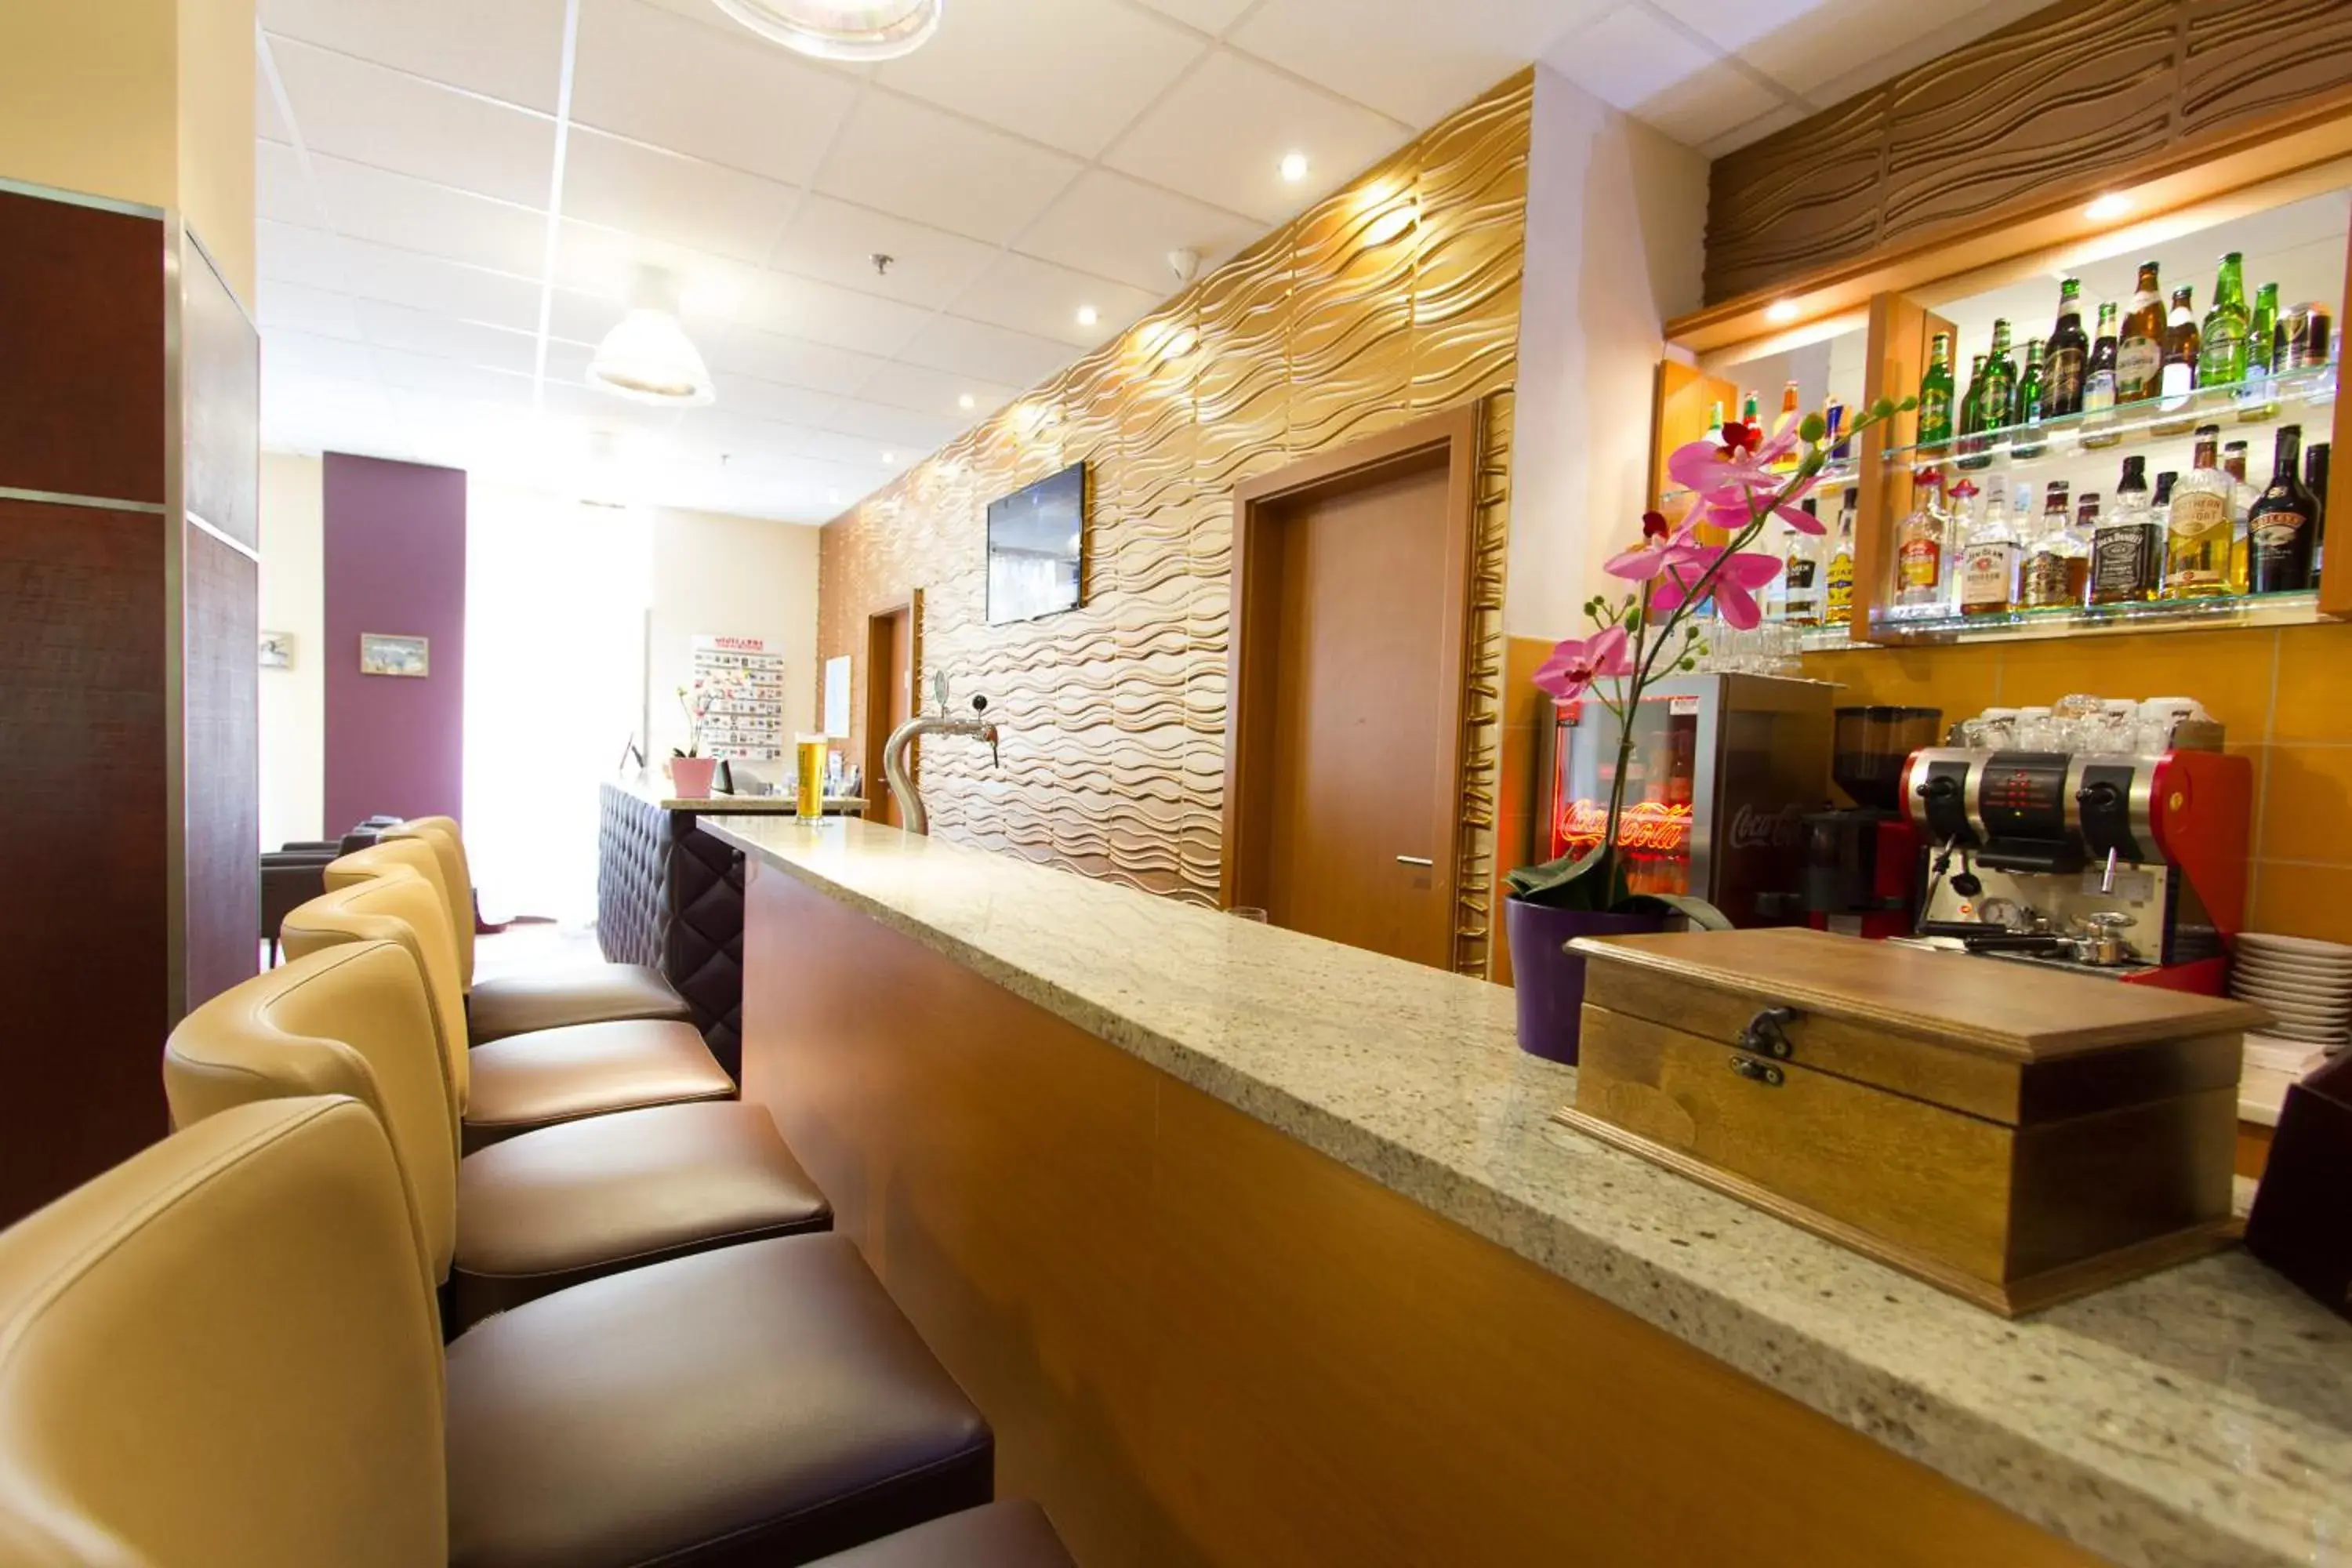 Lobby or reception, Lounge/Bar in Six Inn Hotel